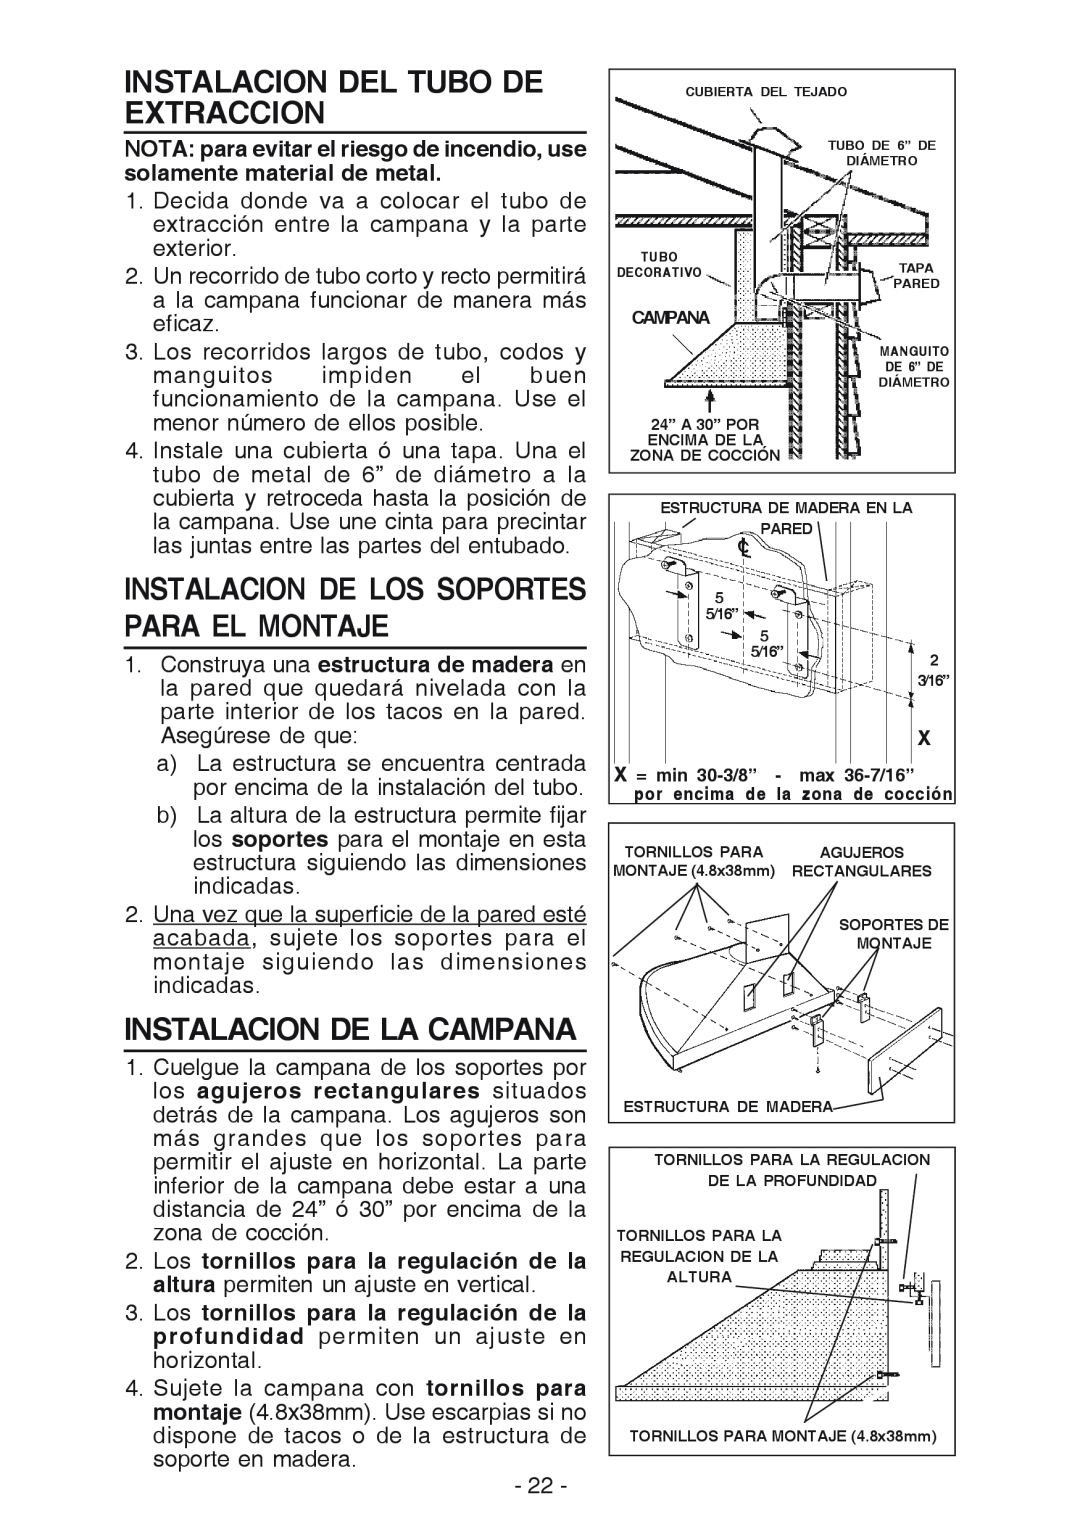 Best K15 manual Instalacion Del Tubo De Extraccion, Instalacion De La Campana, Instalacion De Los Soportes Para El Montaje 